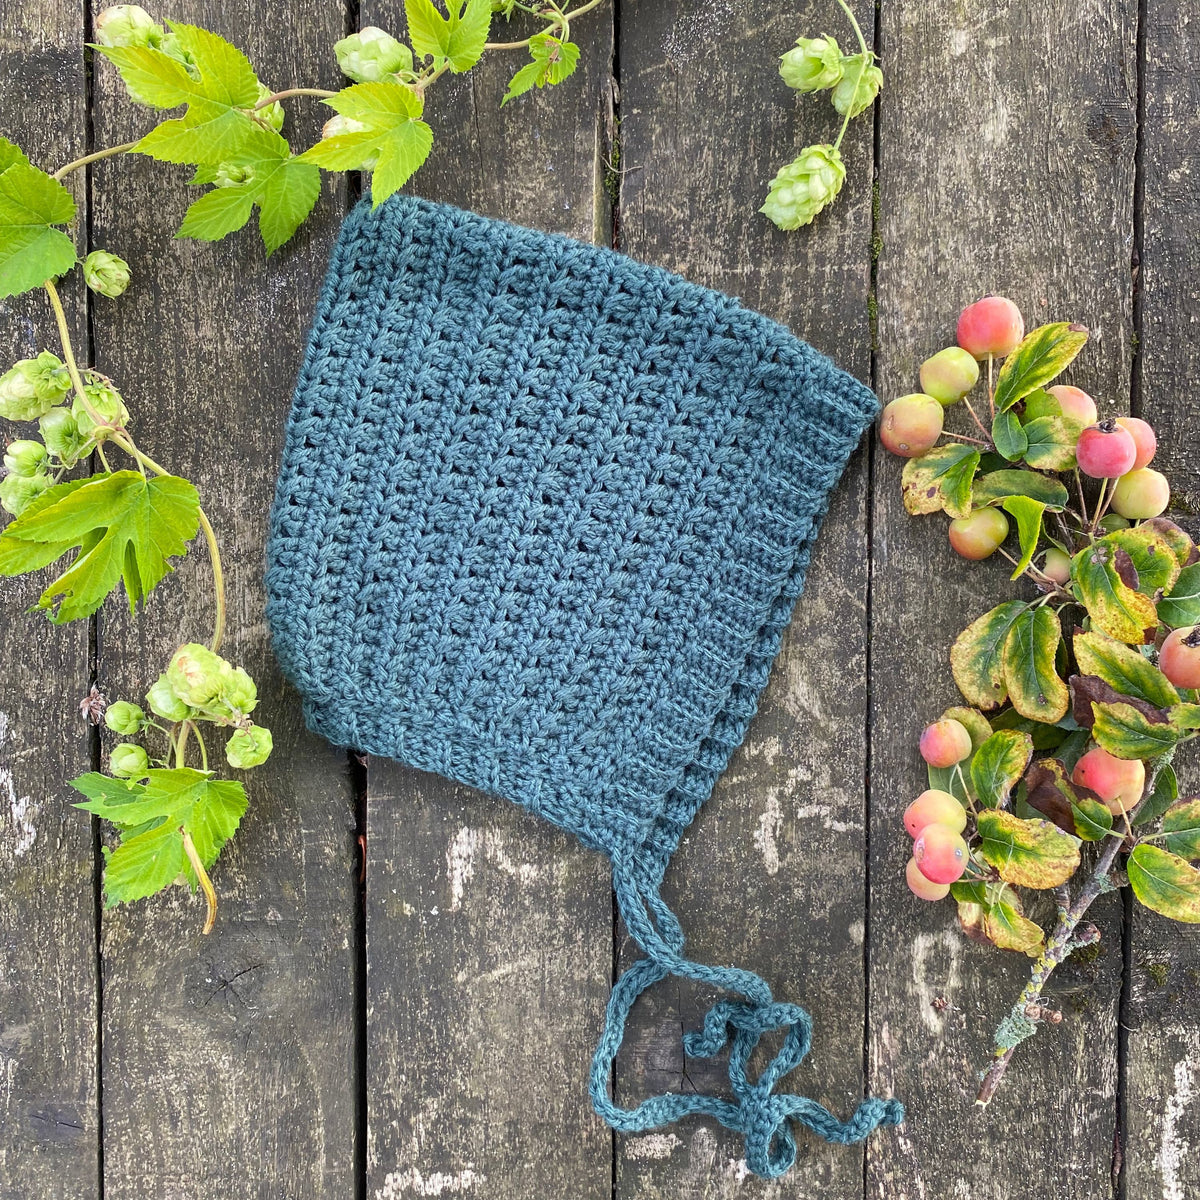 Rudy Bonnet Crochet Pattern – The Moule Hole